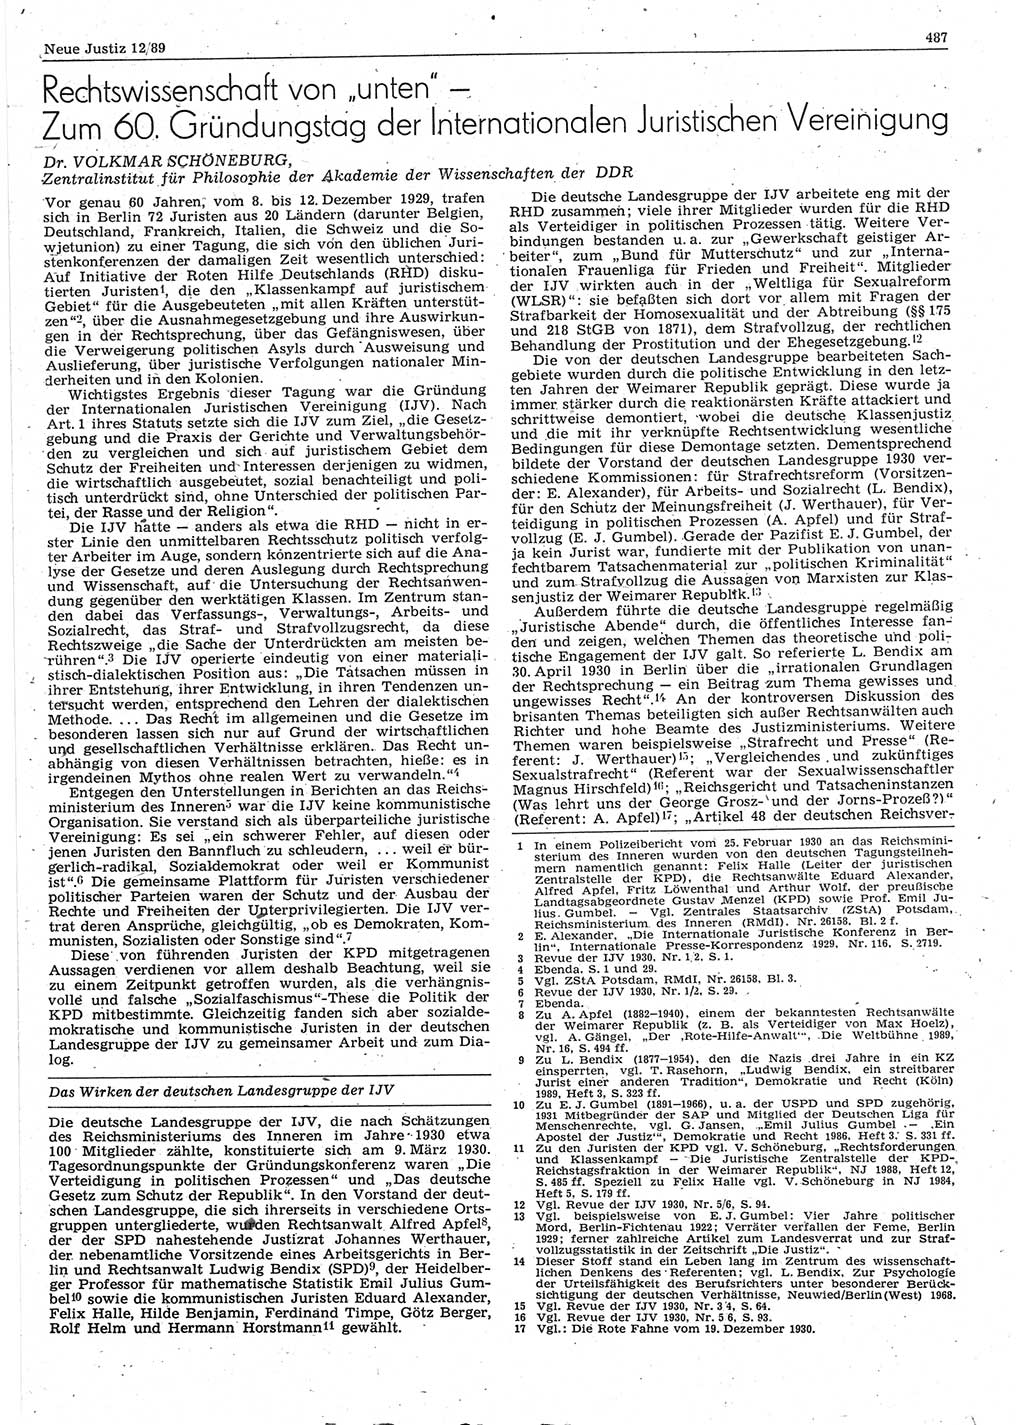 Neue Justiz (NJ), Zeitschrift für sozialistisches Recht und Gesetzlichkeit [Deutsche Demokratische Republik (DDR)], 43. Jahrgang 1989, Seite 487 (NJ DDR 1989, S. 487)